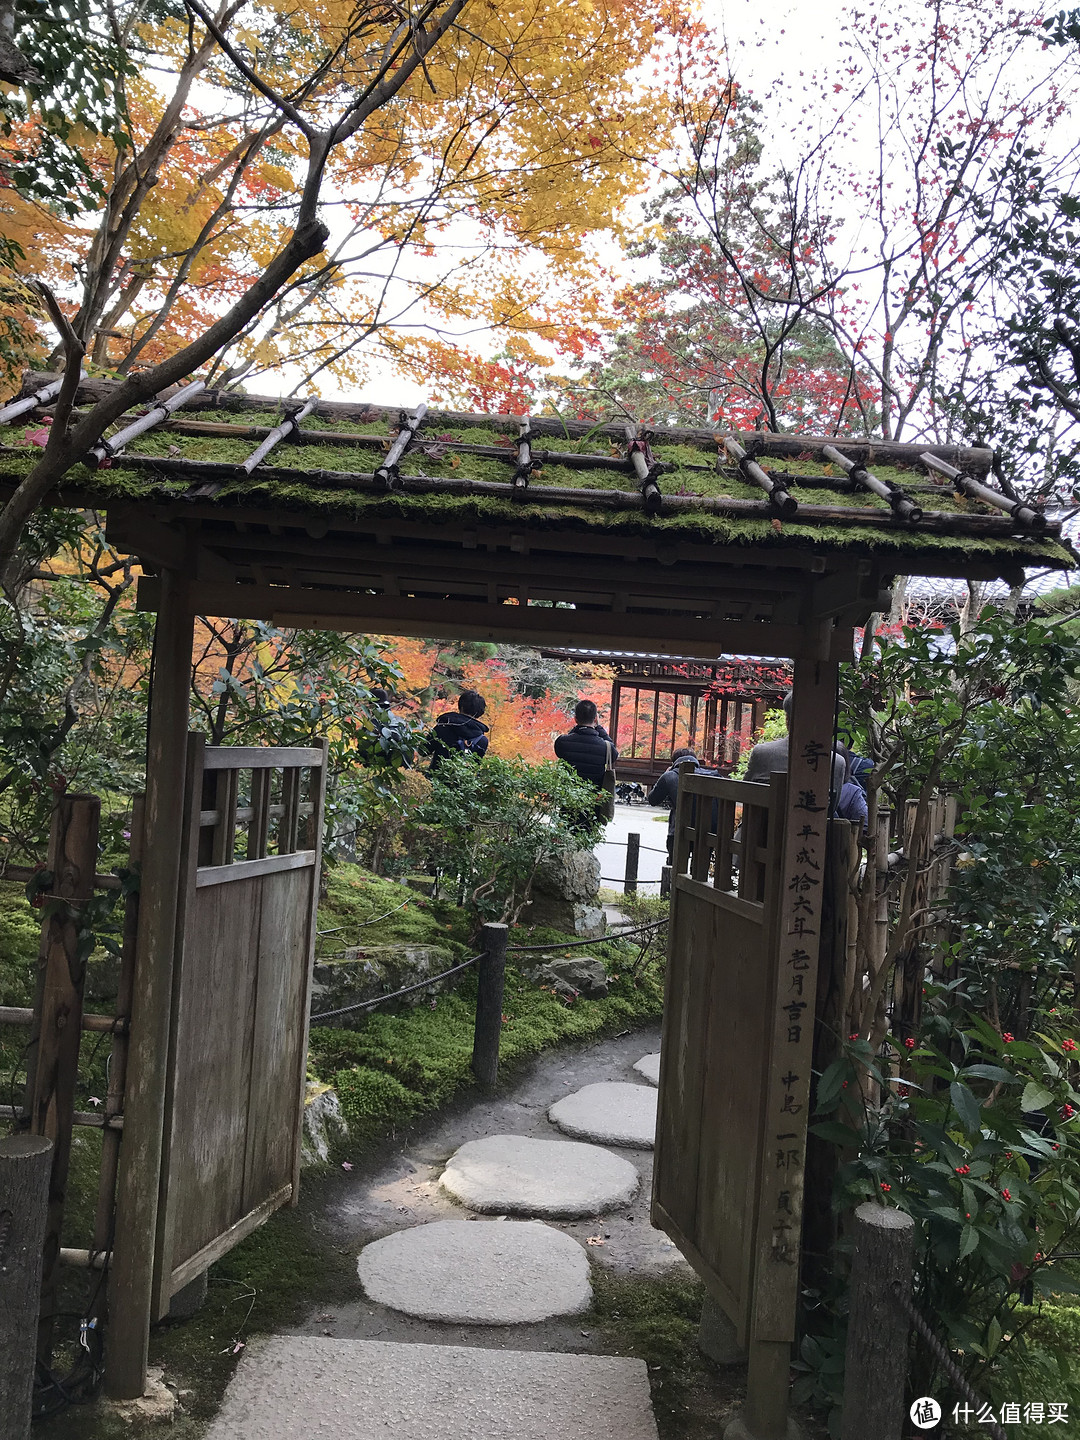 五一假期太短？十一假期去日本吧！红叶季游大阪、奈良、京都攻略收好！